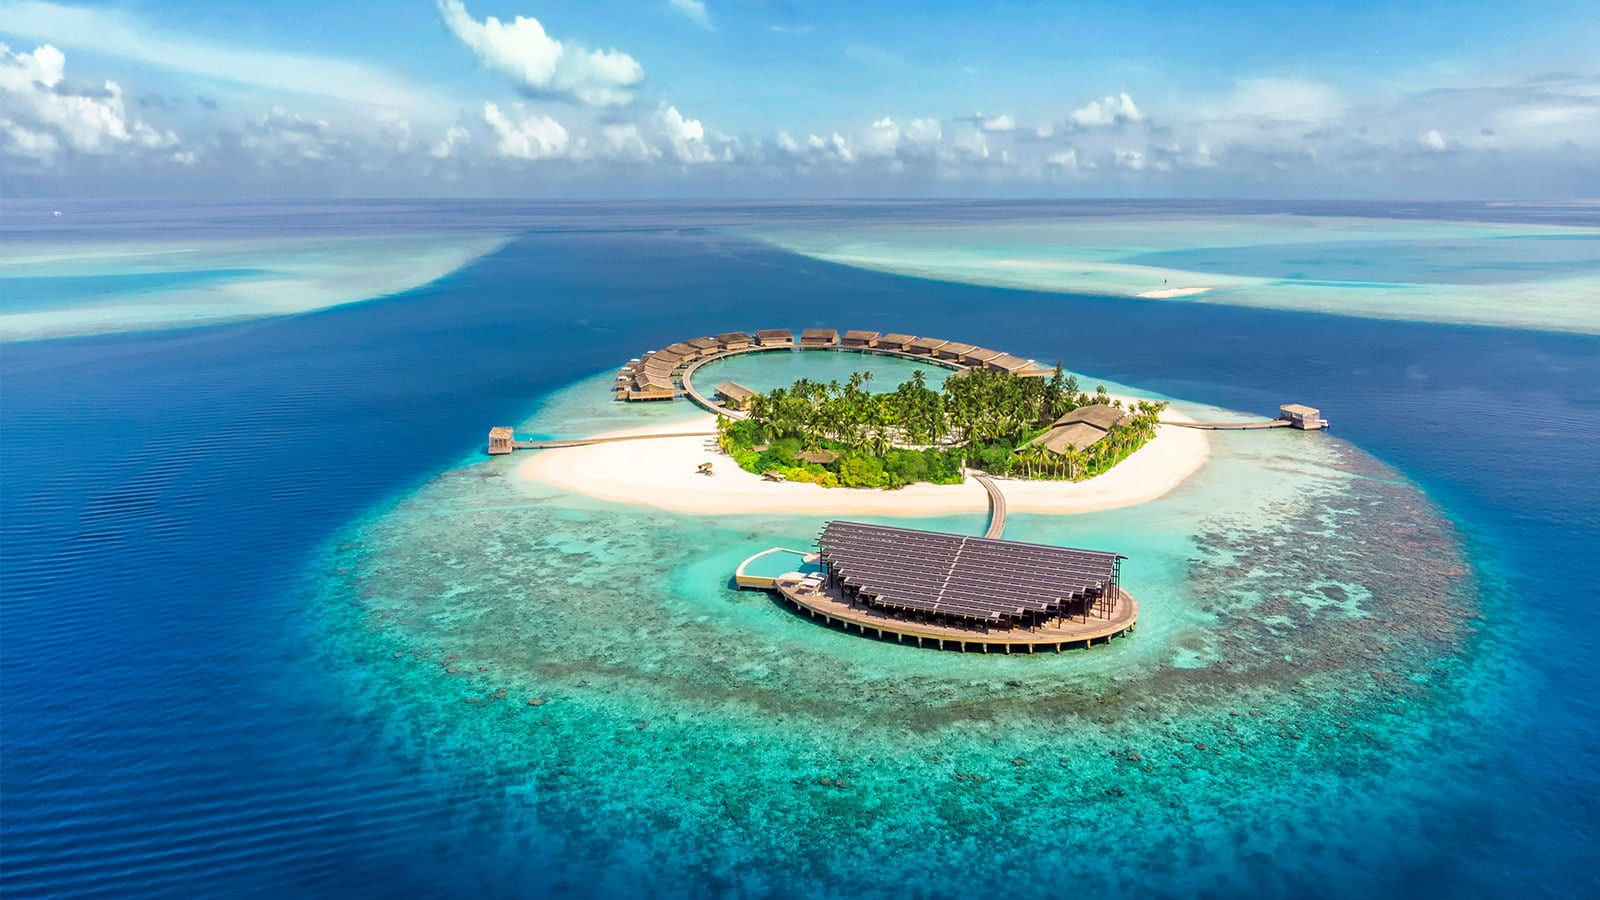 في أي قارة تقع جزر المالديف.. إجابة سؤال الحلقة 16 في مسابقة مهيب ورزان رمضان 2021 لربح 100 ألف جنيه 4